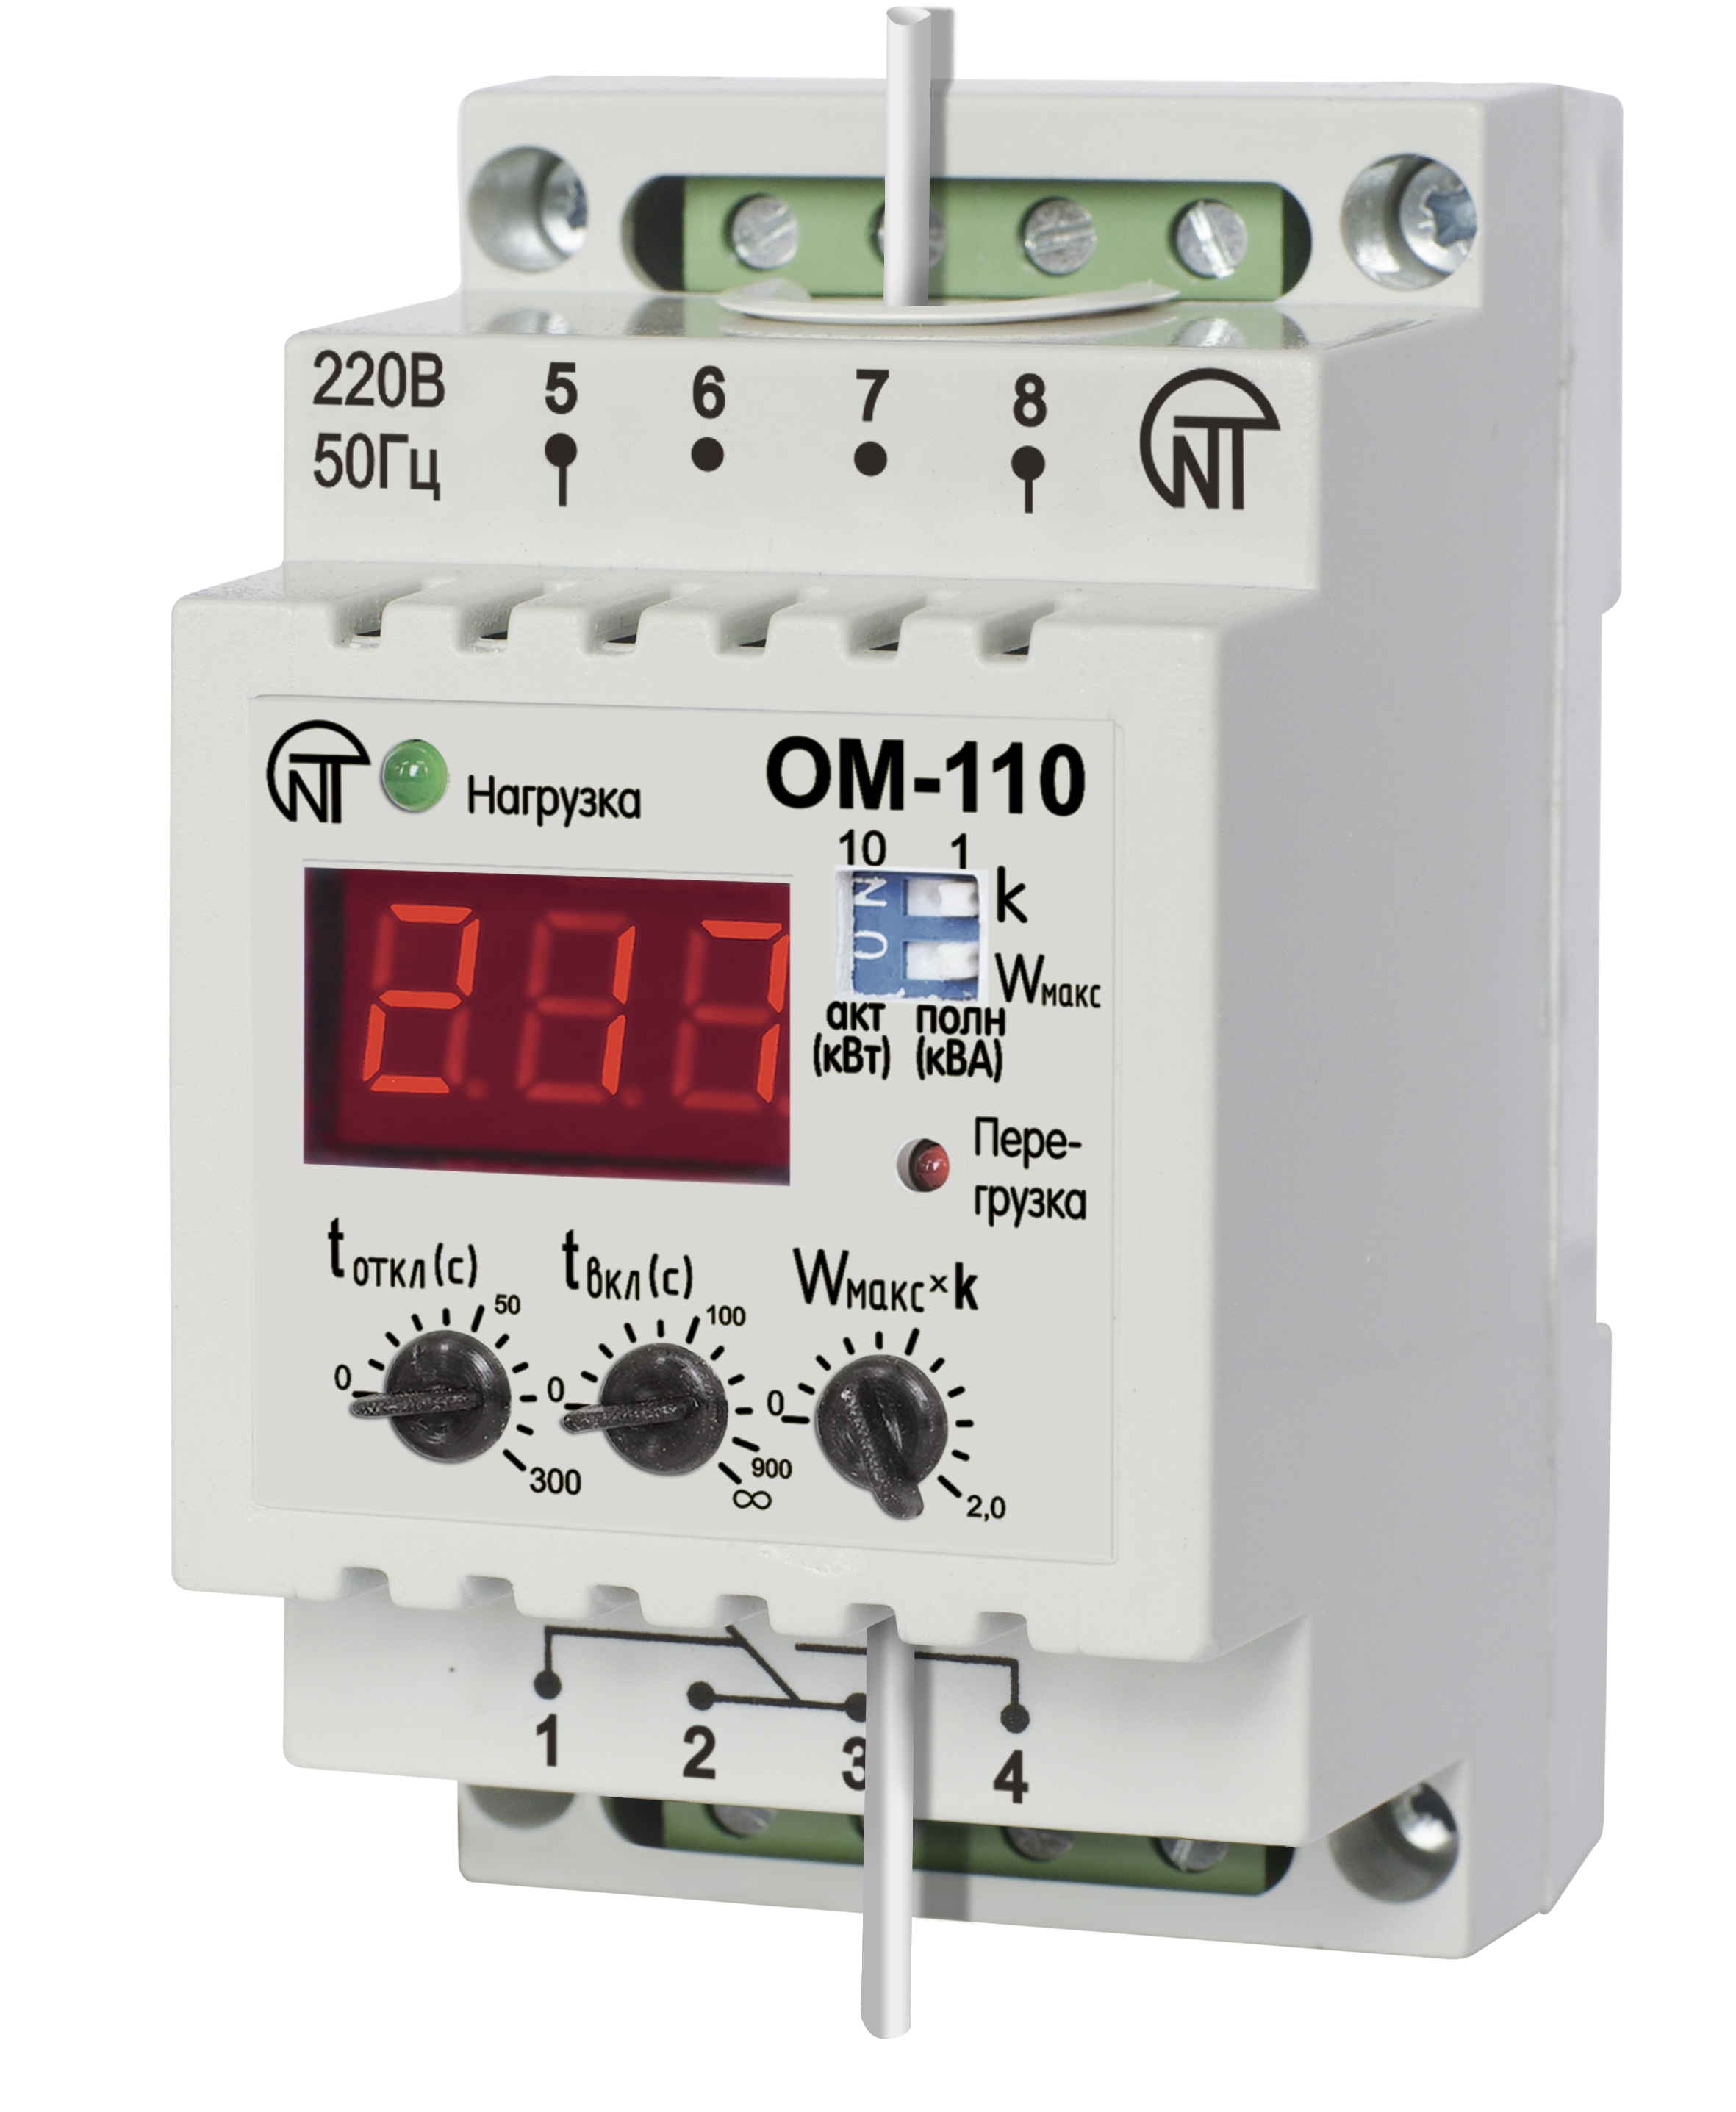 Изображение ОМ-110 | Реле ограничения мощности 0-2 кВт (кВА) тип ОМ-110 ОМ-110 Новатек-Электро